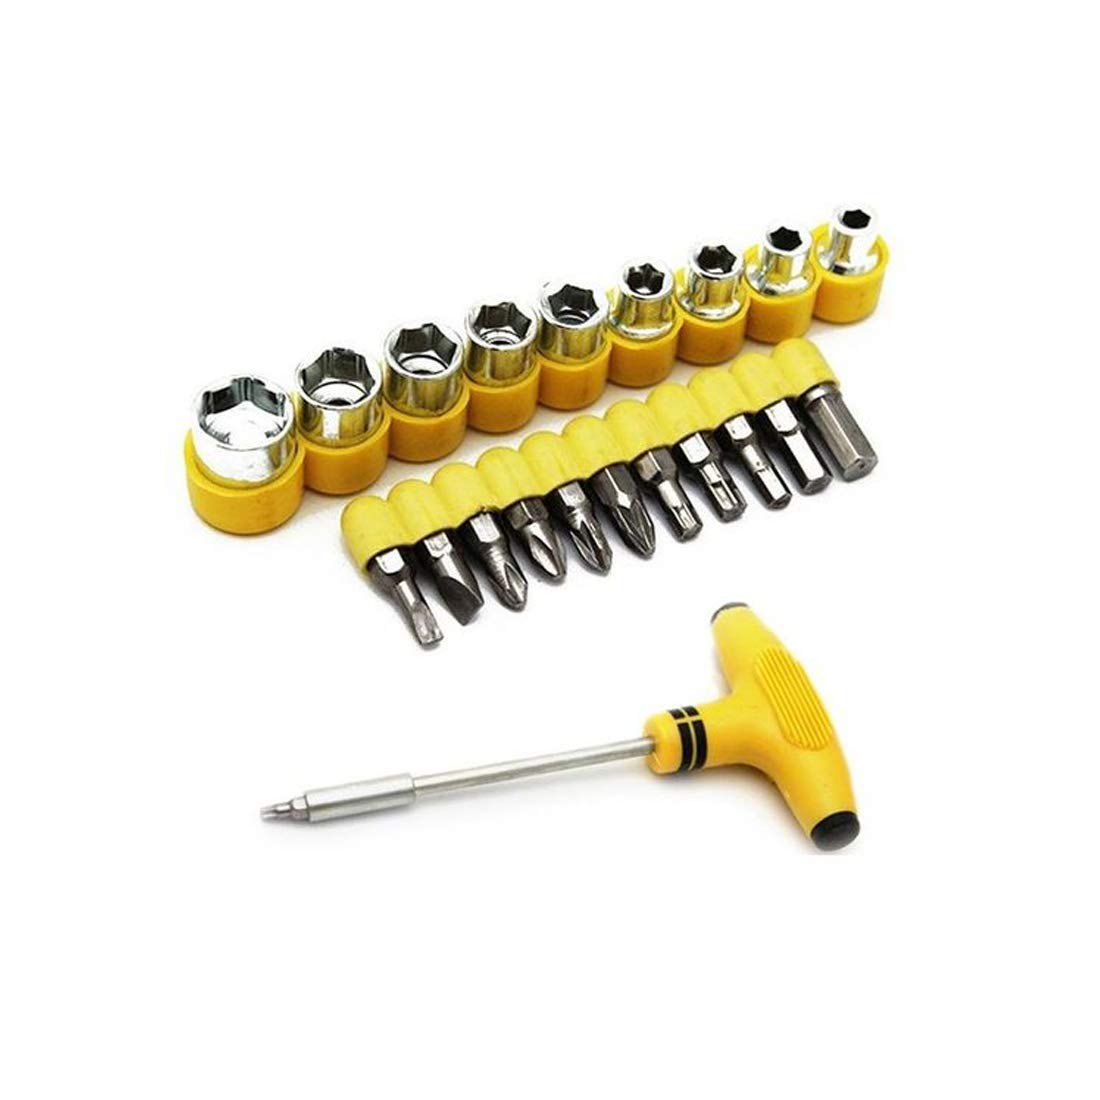 24 Pcs Socket And Bits Screwdriver Socket Tool Kit For Home Repair/Maintenance @ Just Rs.499/-